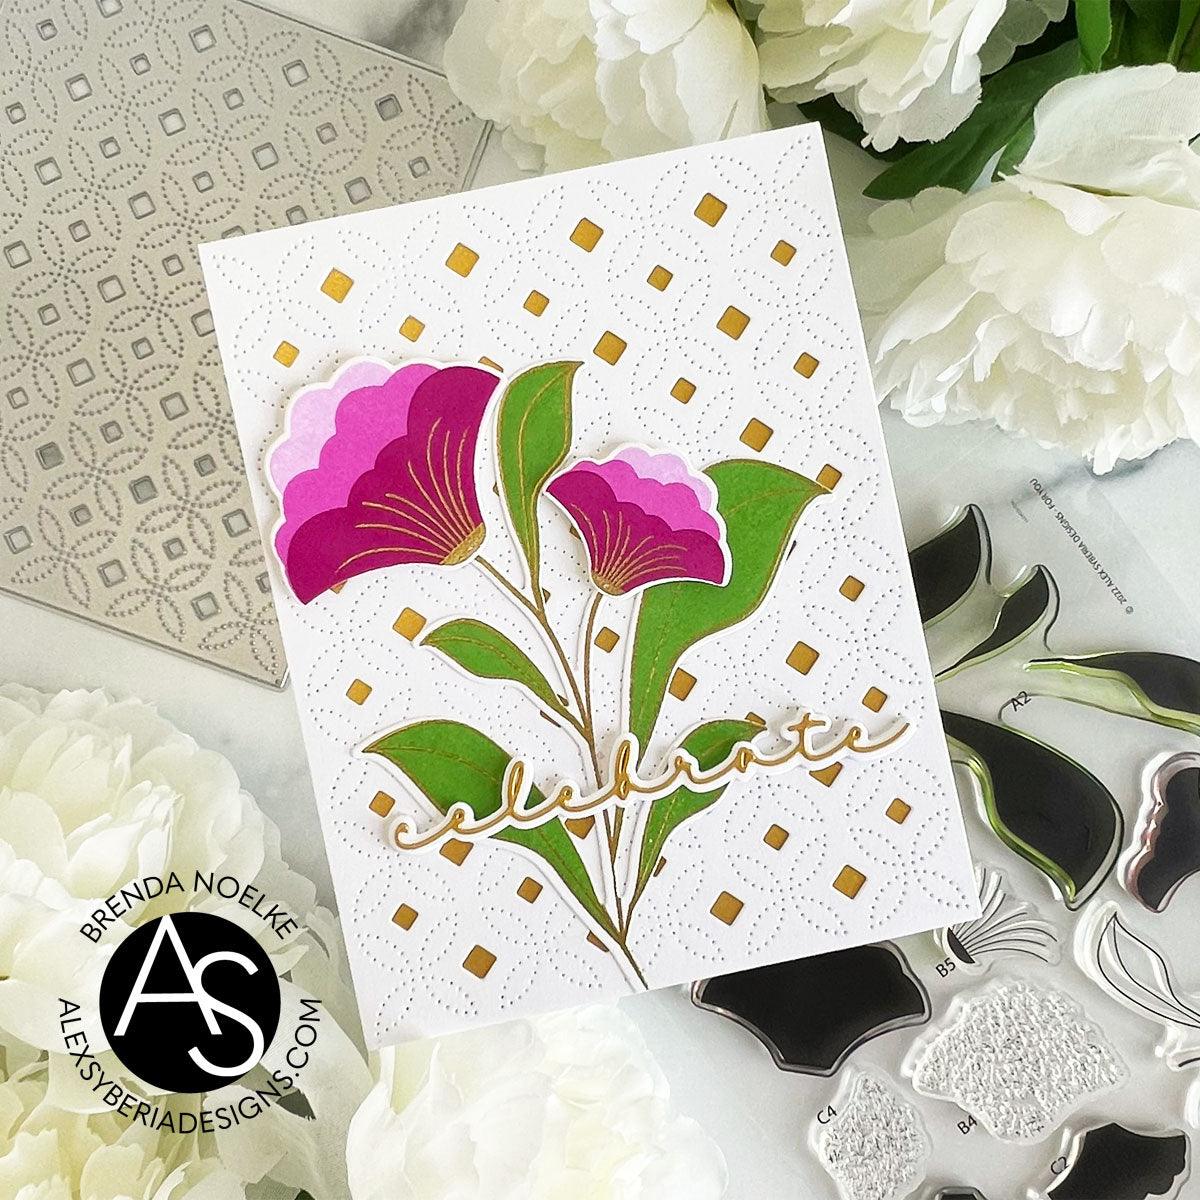 For-You-Die-Alex-Syberia-Designs-Flowers-Cardmaking-Scrapbooking-diecutting-embossing-floral-handmadecards-celebrate-die